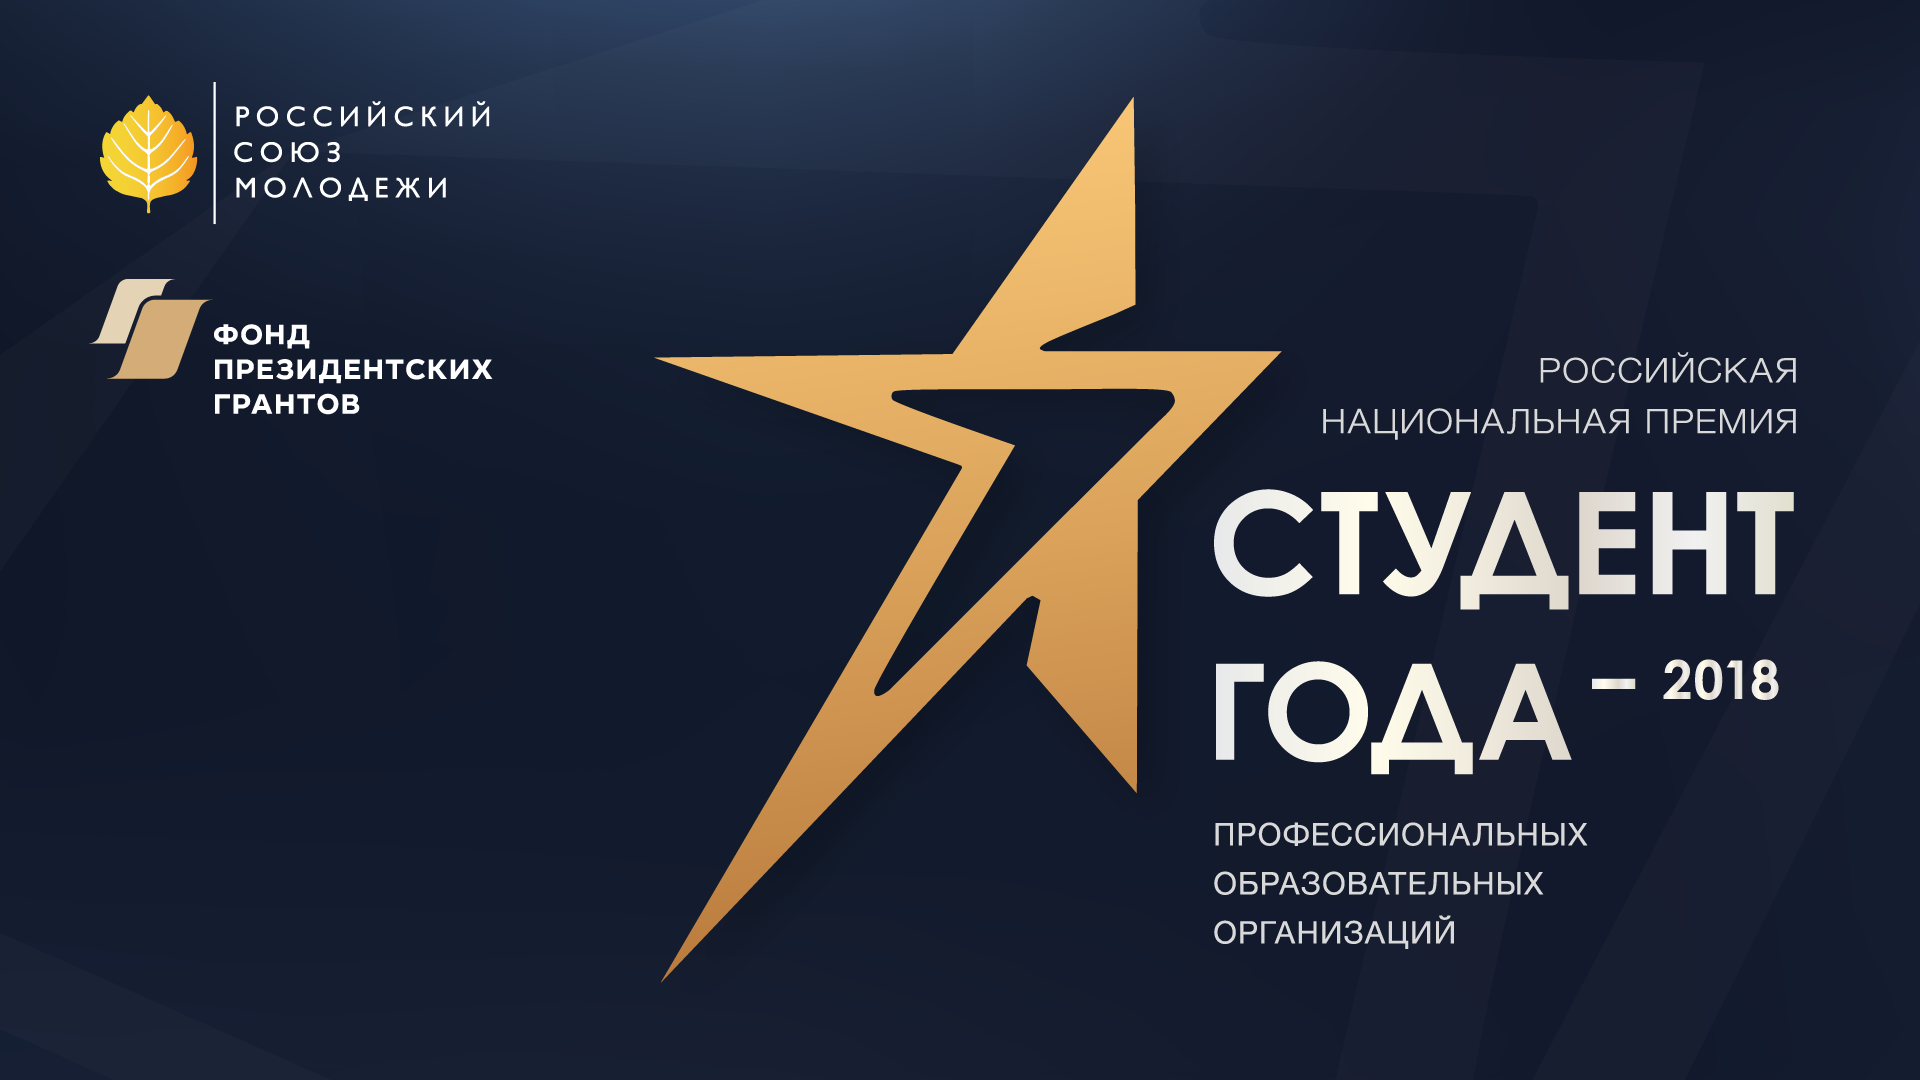 Российская национальная премия «Студент года – 2018» профессиональных образовательных организаций стартовала в Астрахани